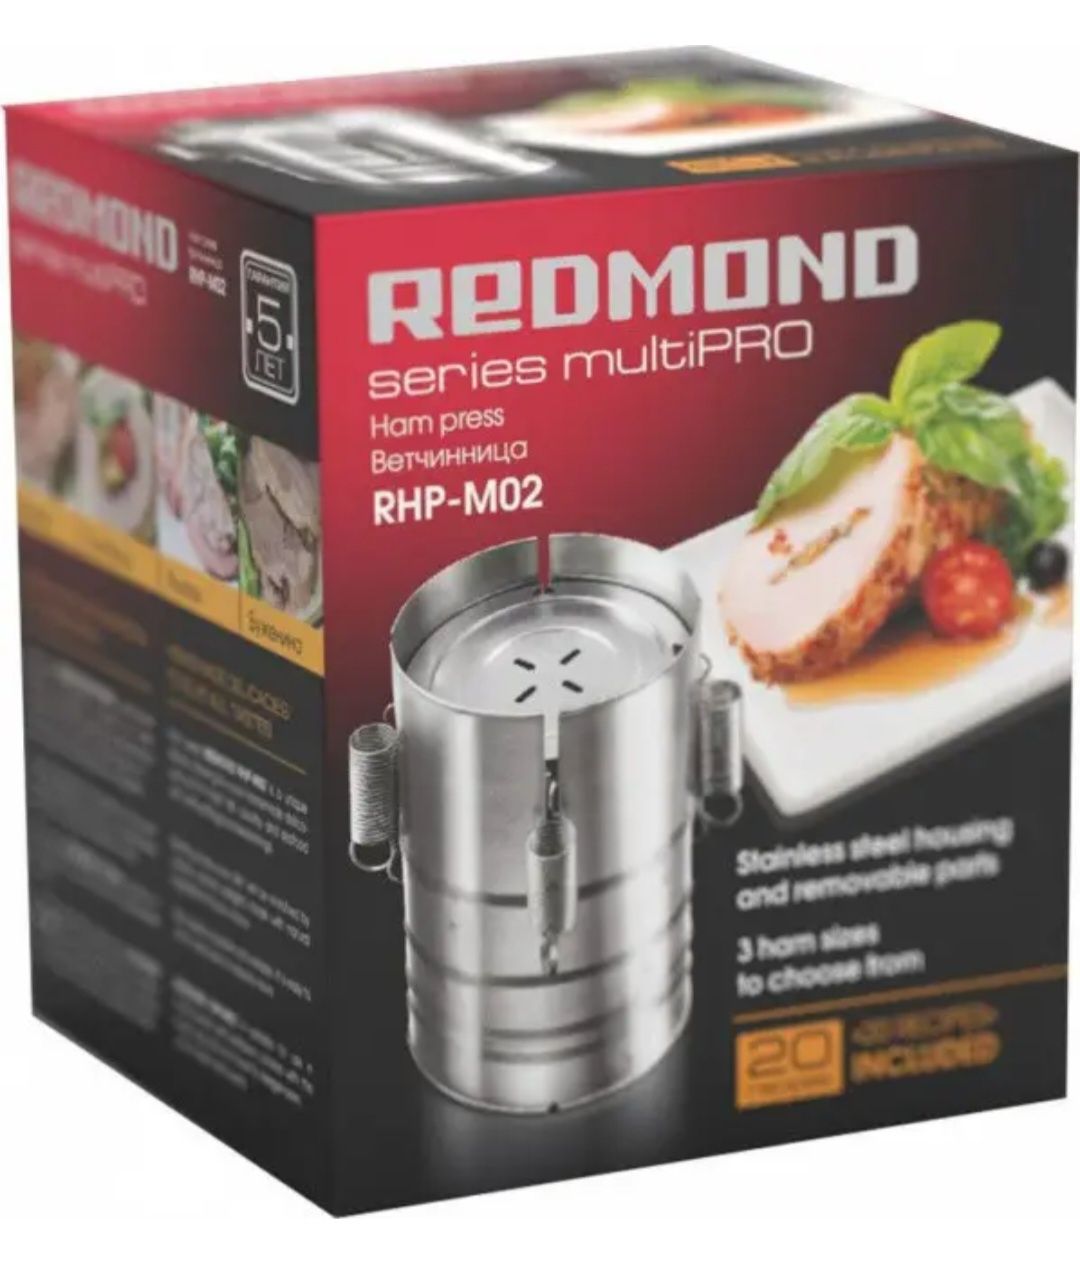 Вітчинниця Redmond multiPro RHP-M02 прес для приготування шинки